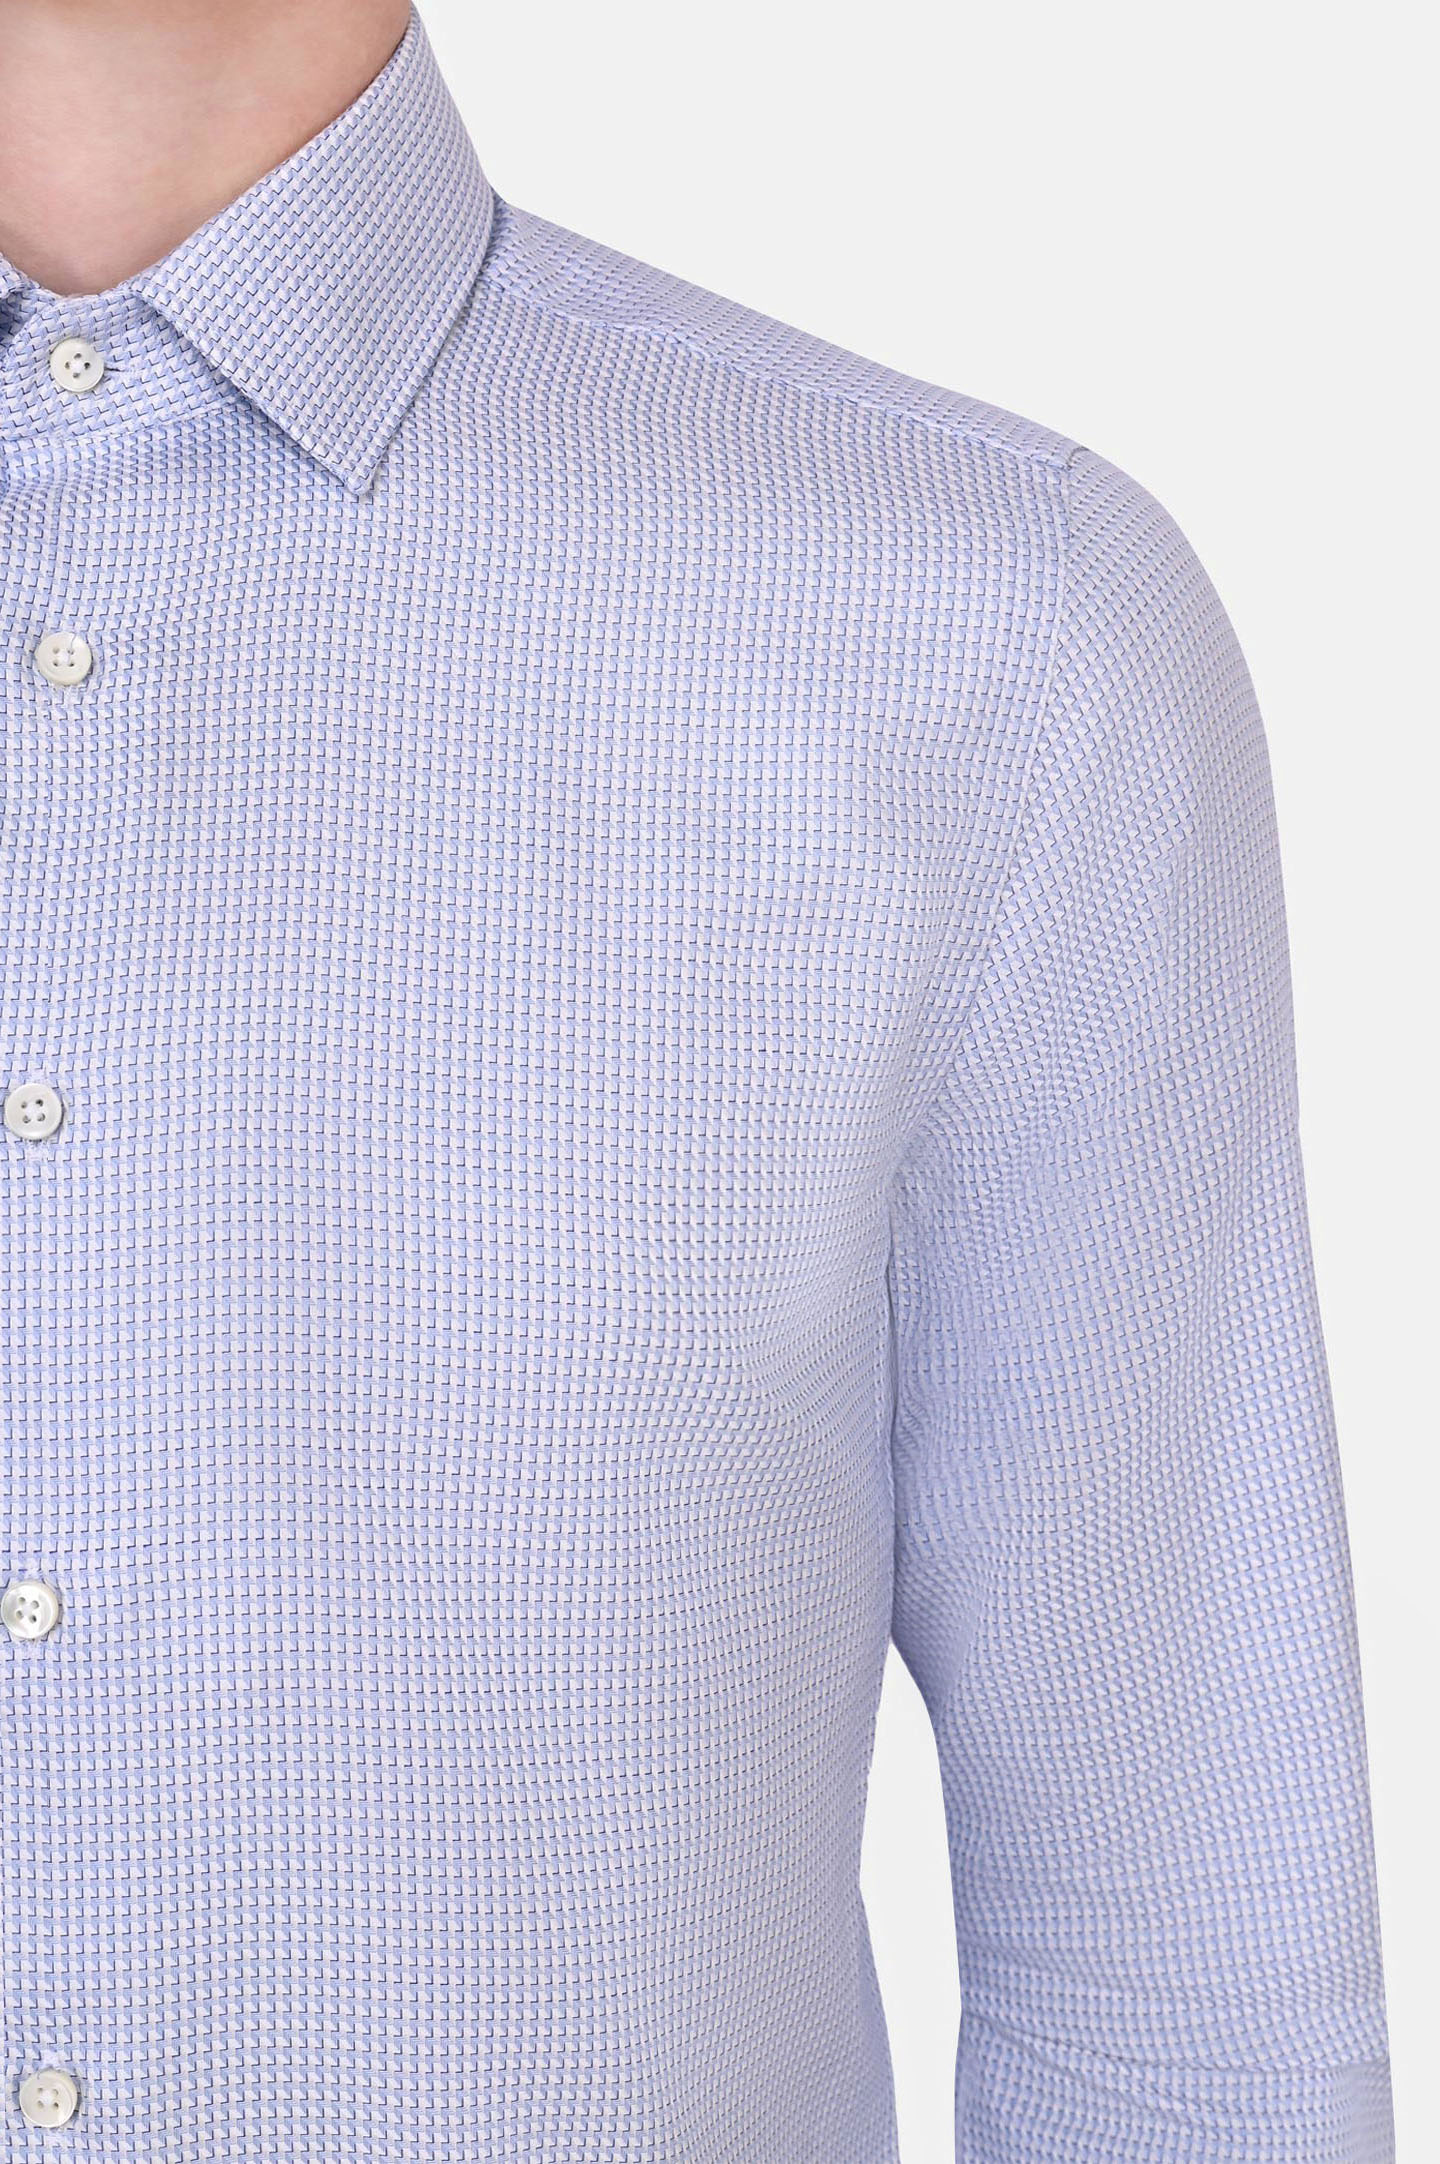 Рубашка CANALI GR02338/401, цвет: Белый, Мужской